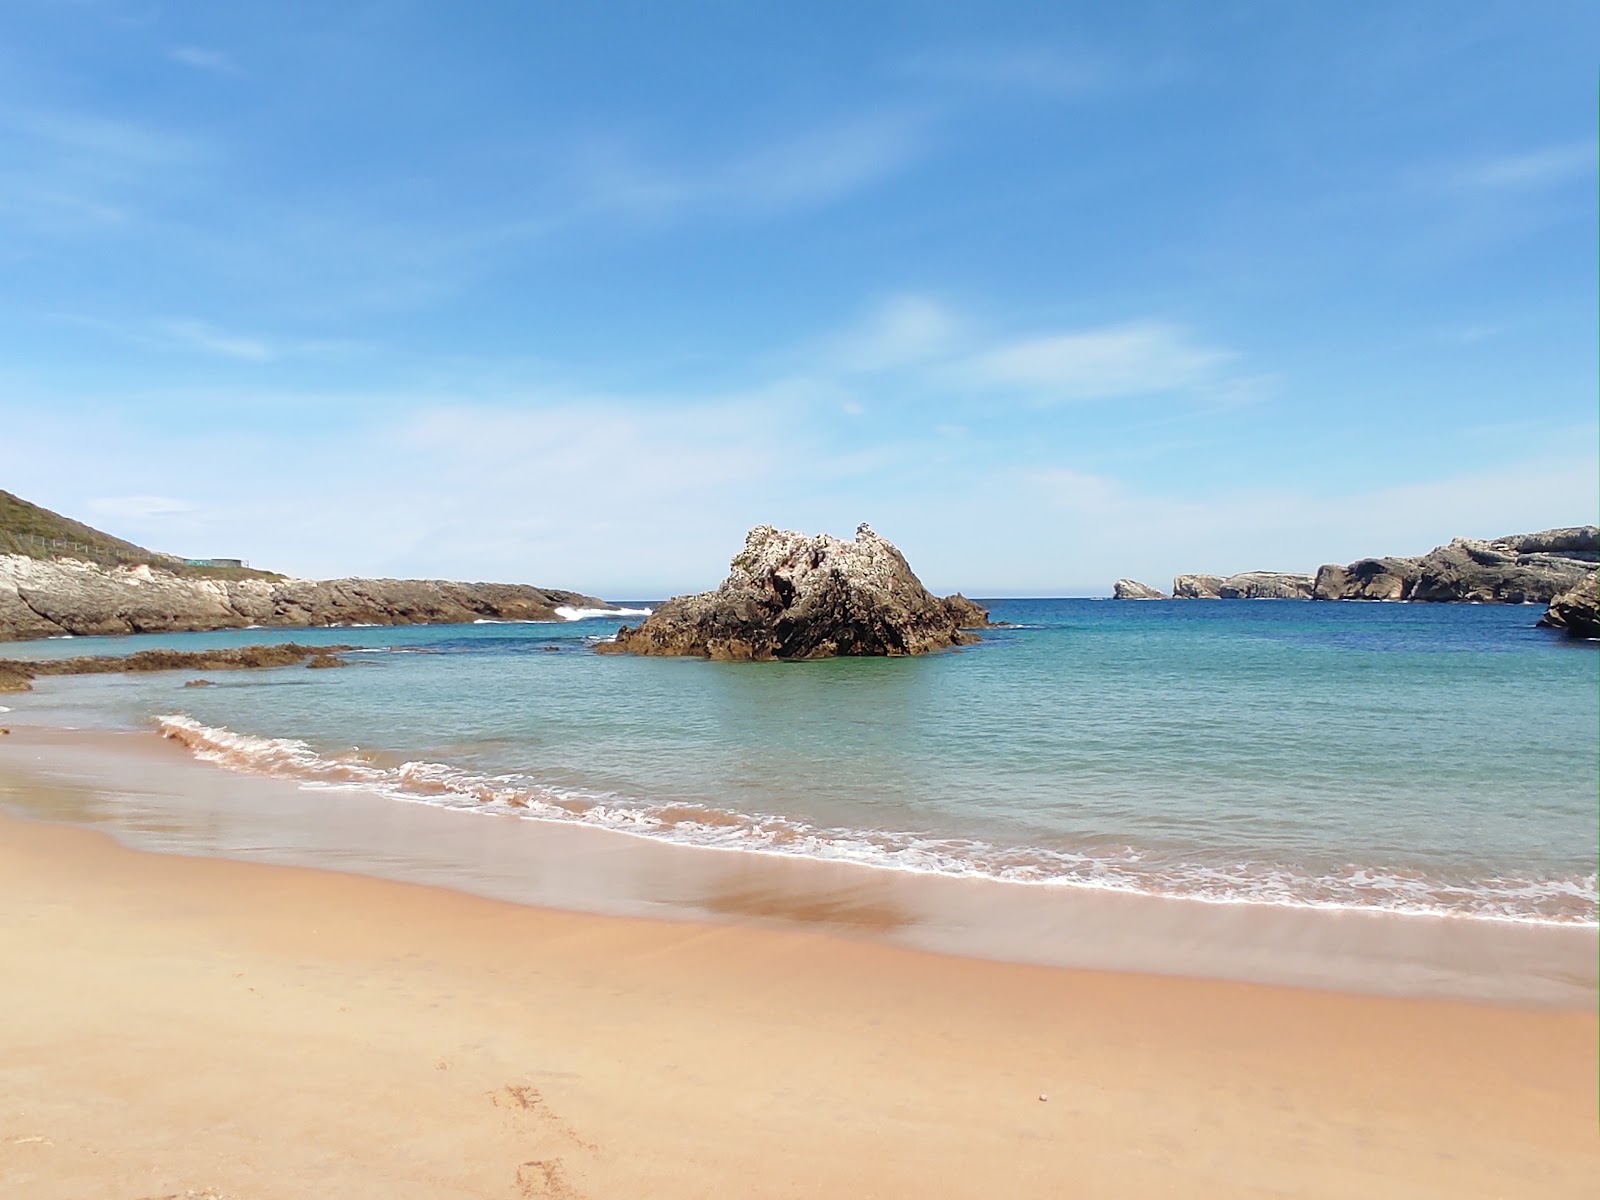 Fotografie cu Playa de San Juan cu o suprafață de nisip strălucitor